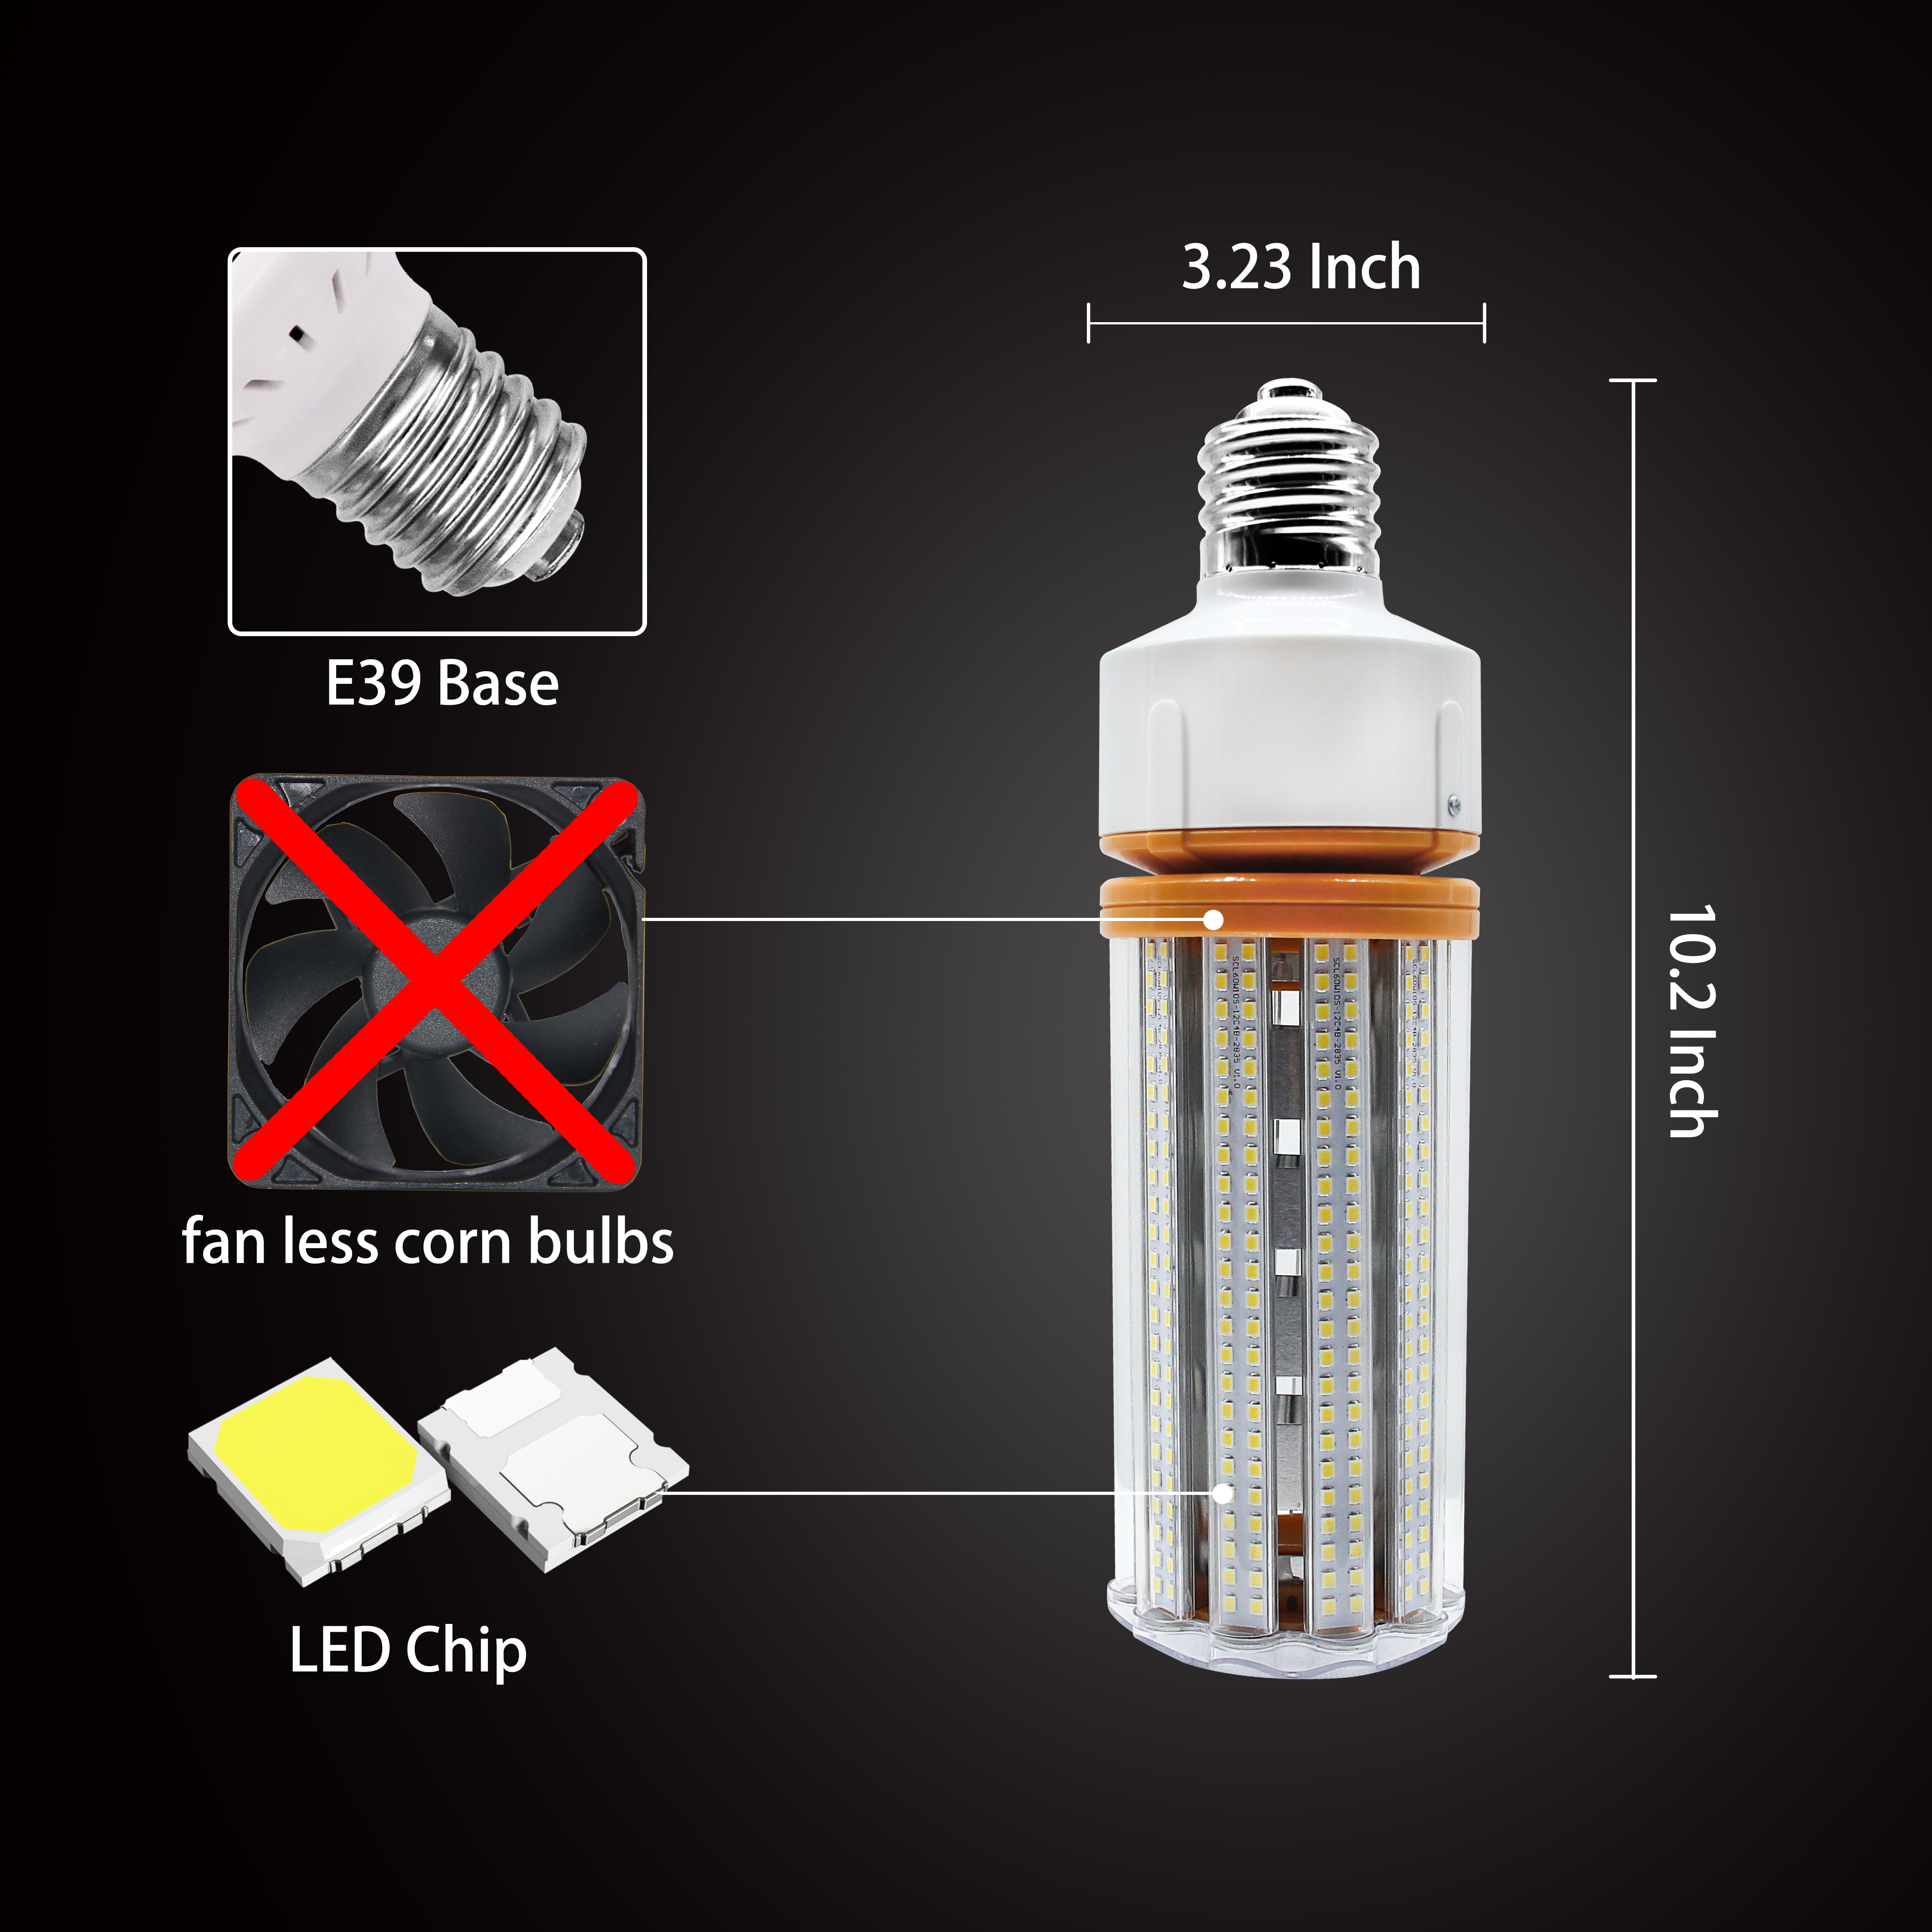 LED Corn Bulb No Fans Led Corn Light led bulb light E26 E39 base 60W with ETL DLC approved